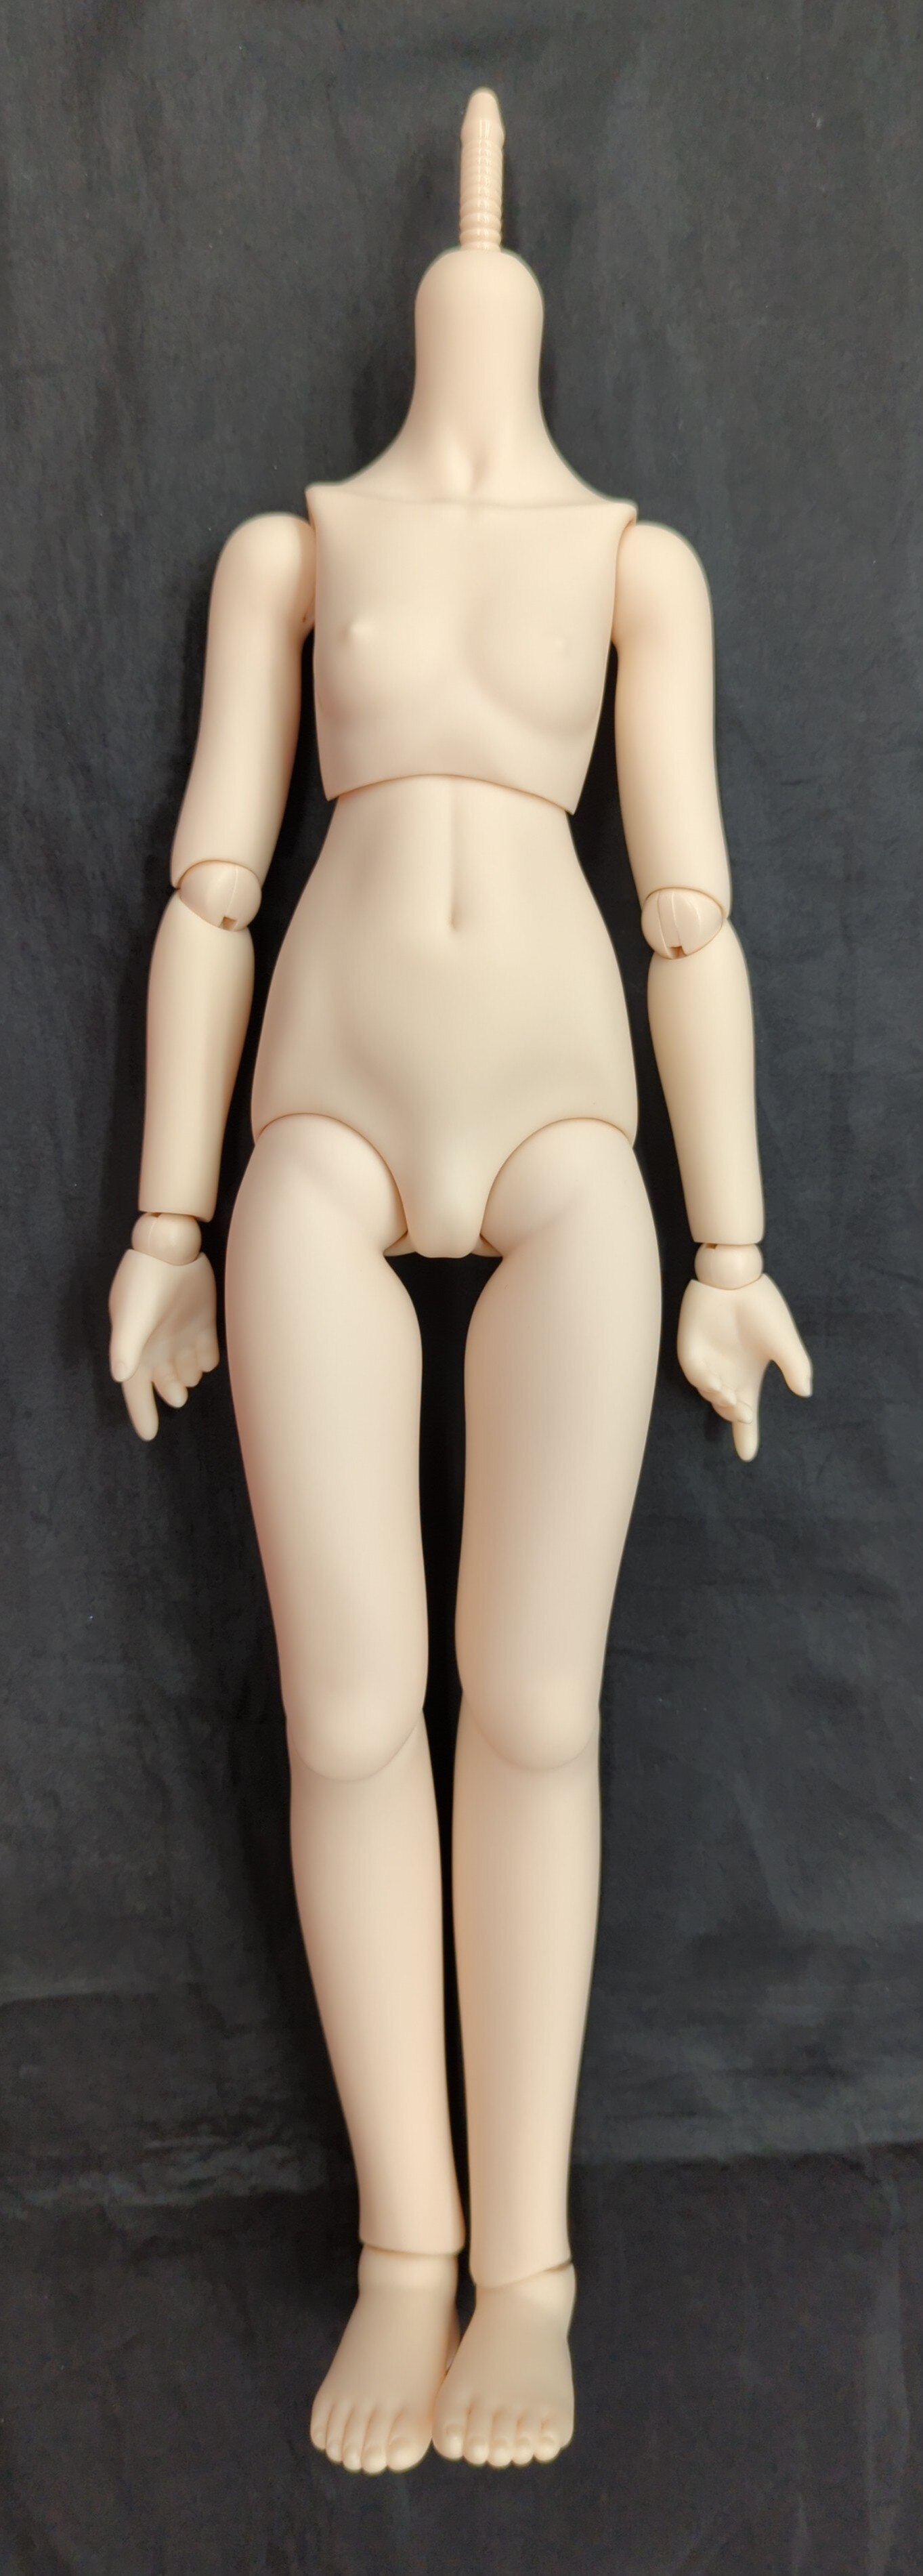 ボークス製 MDDボディ セミホワイト S胸 - おもちゃ/人形